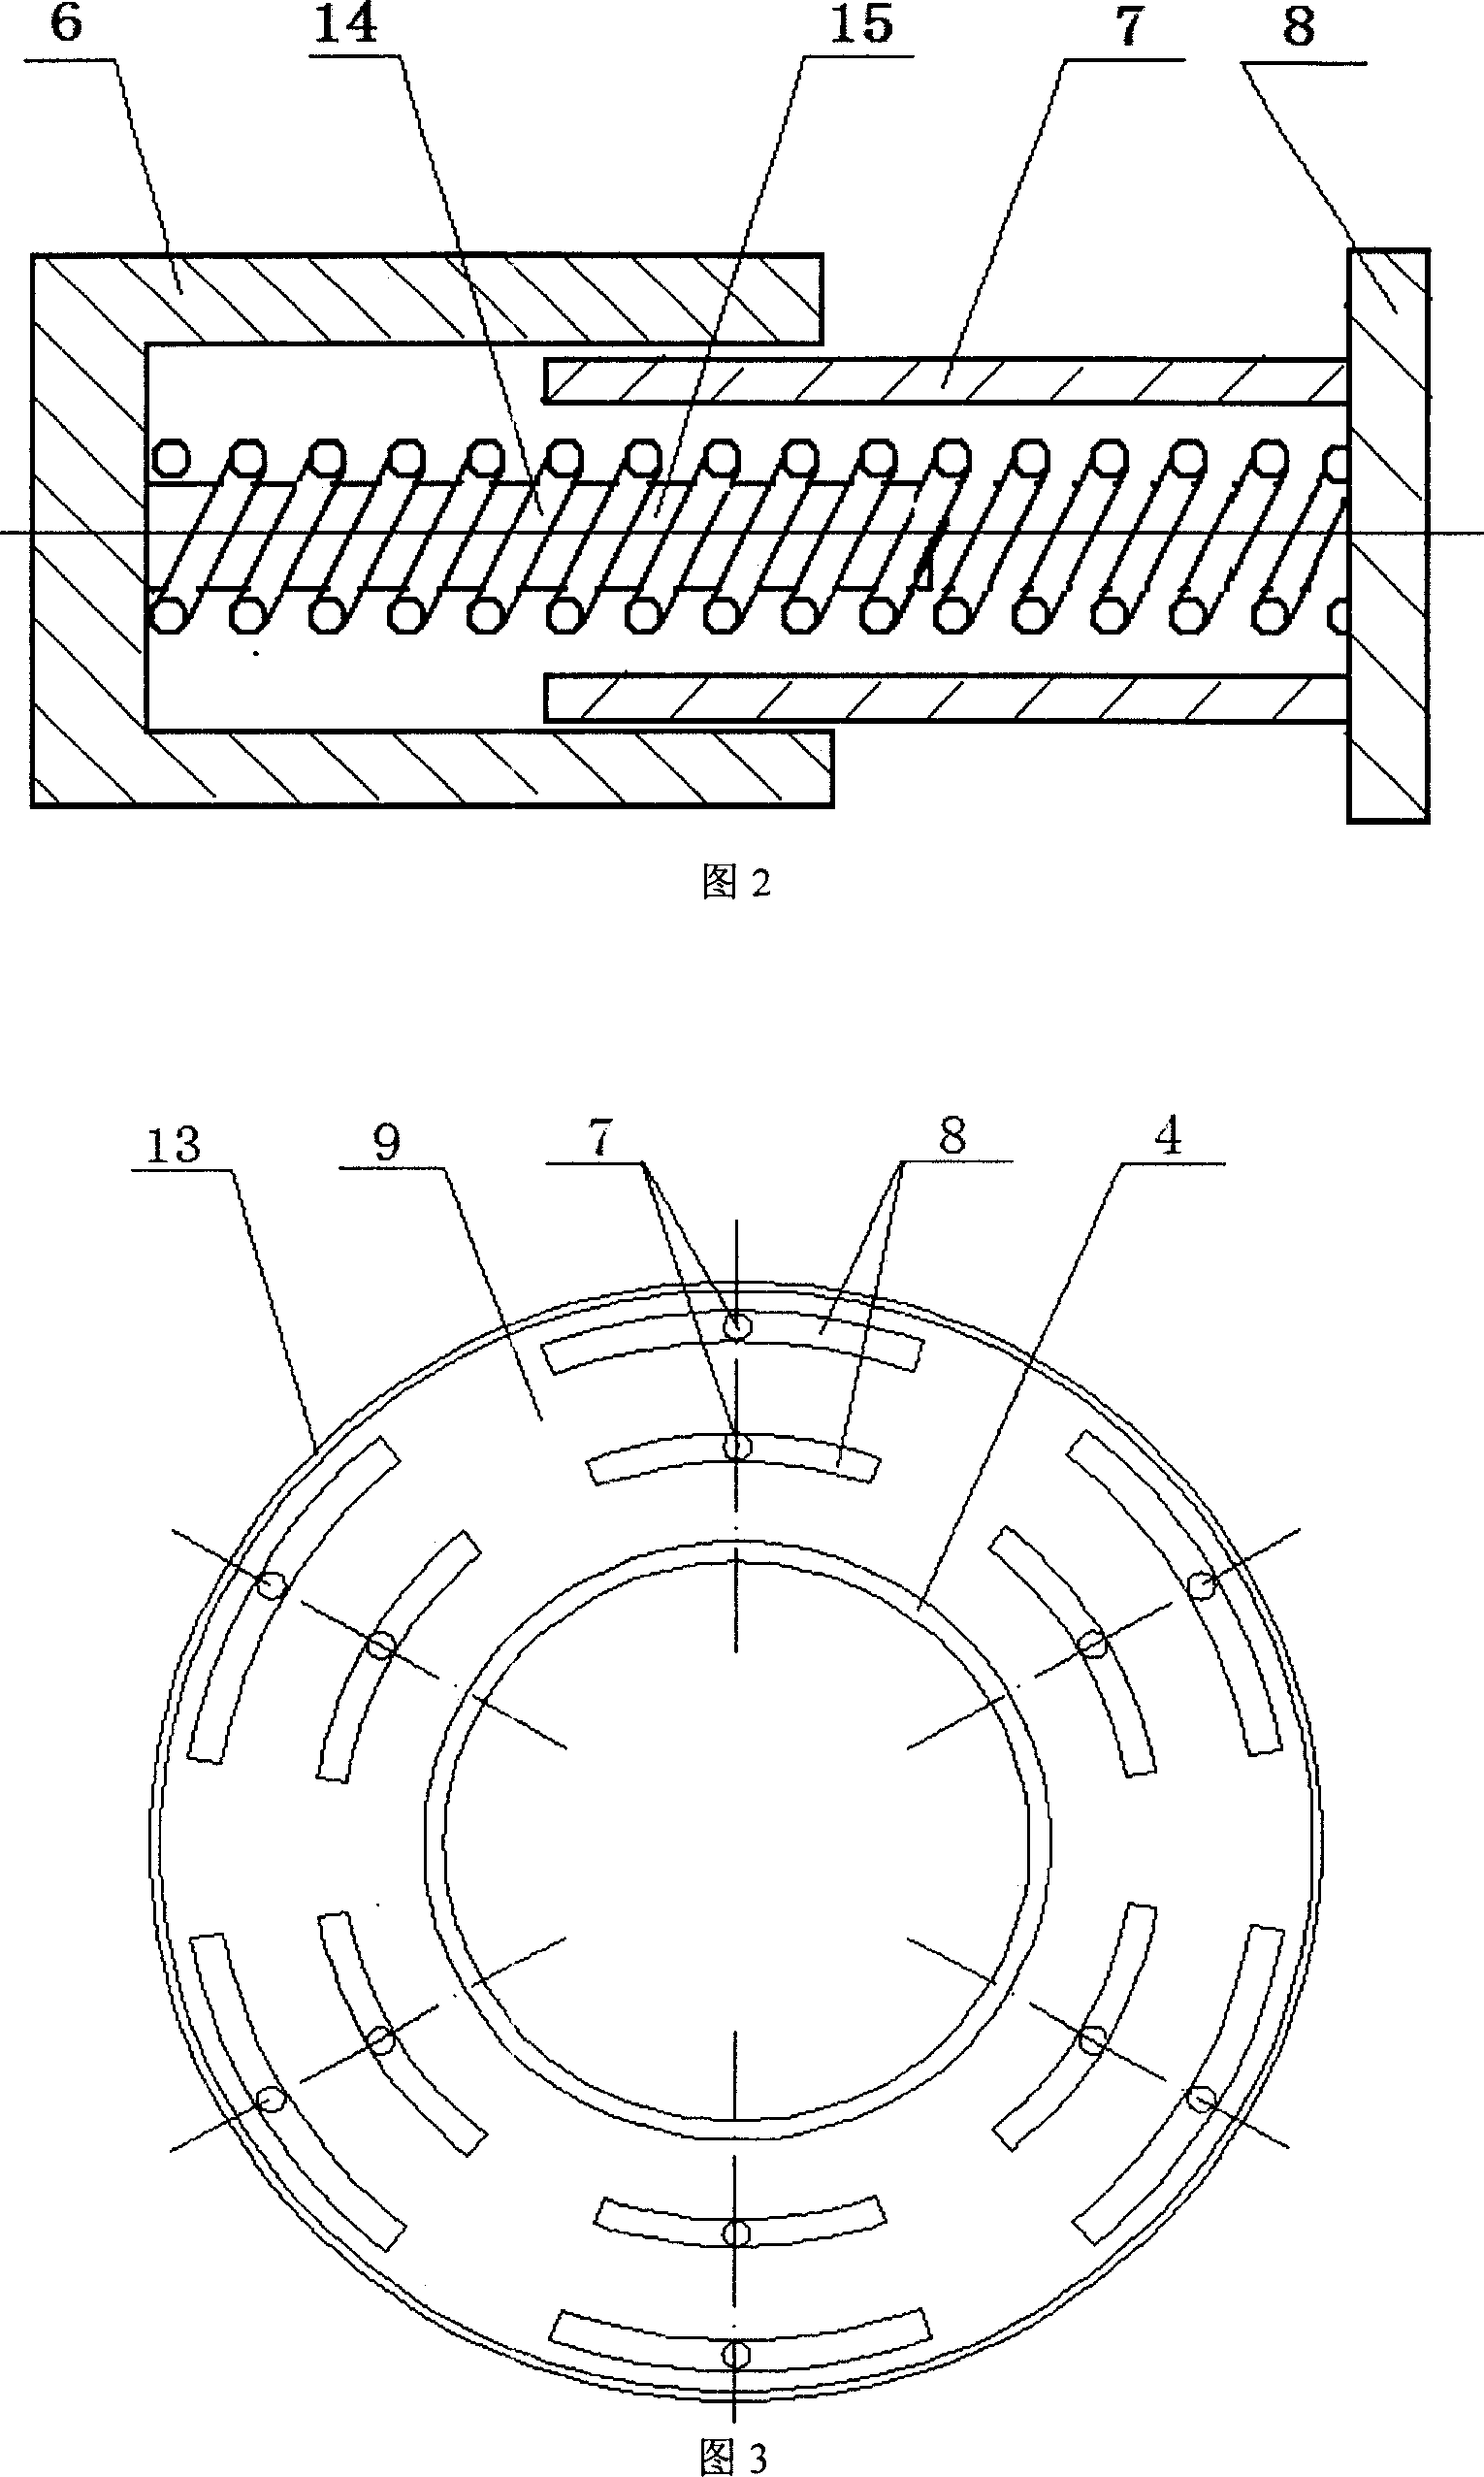 Controllable profile vaneless diffuser for centrifugal compressor